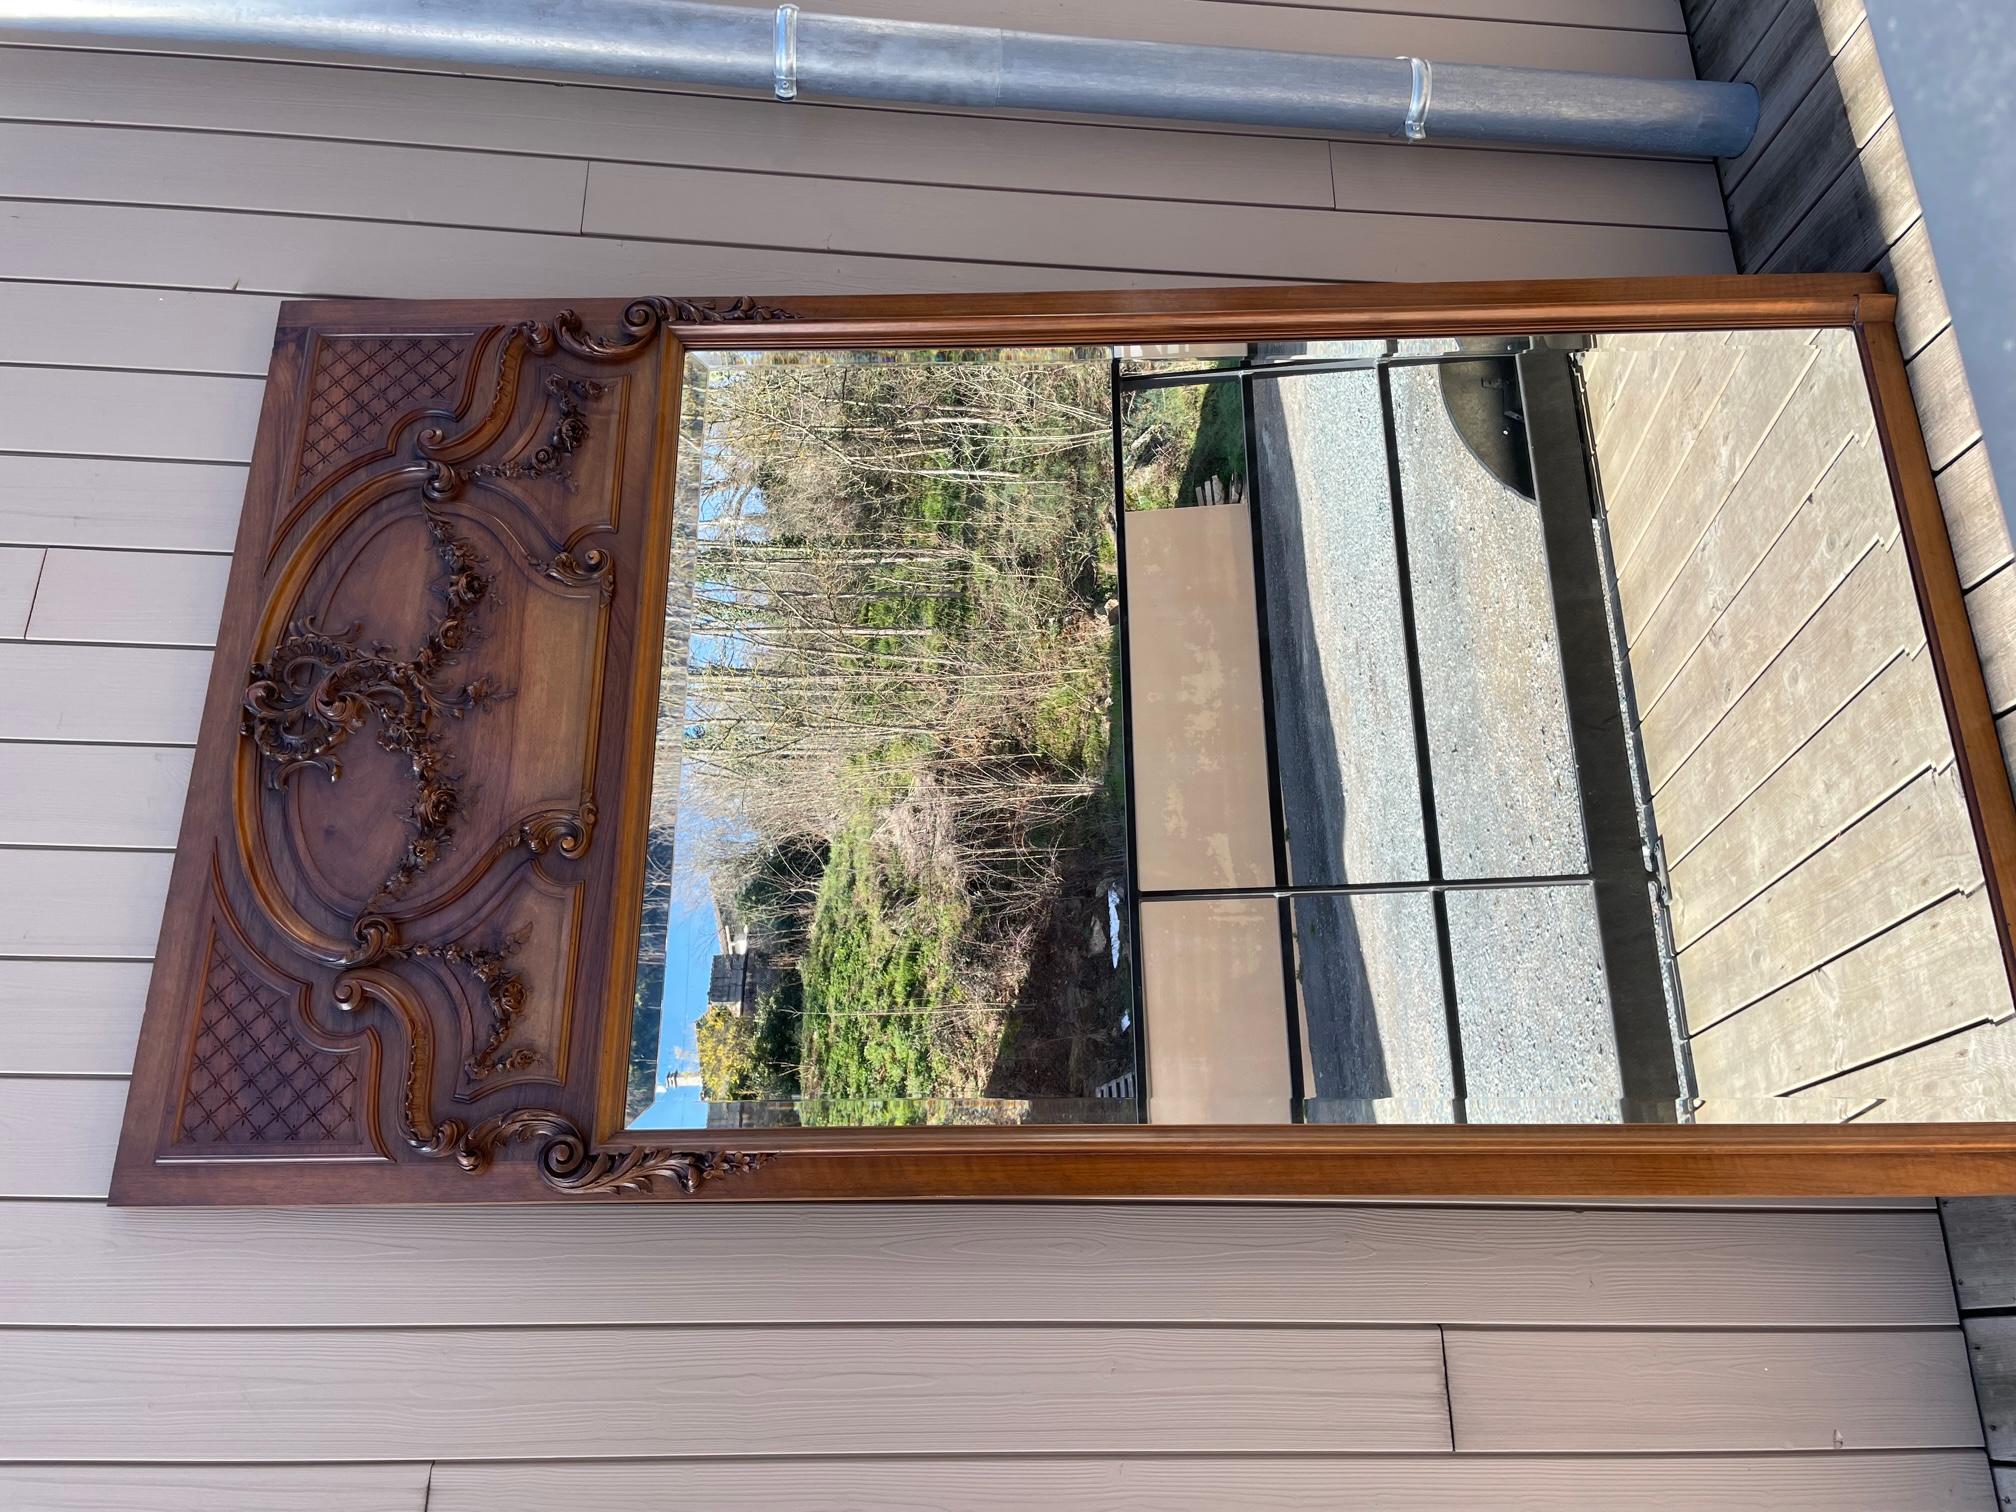 Grand miroir de style Louis XV en noyer datant du début du 20ème siècle.
Miroir biseauté. Très beaux détails de fleurs gravés dans le bois.
Très bonne qualité et bon état.